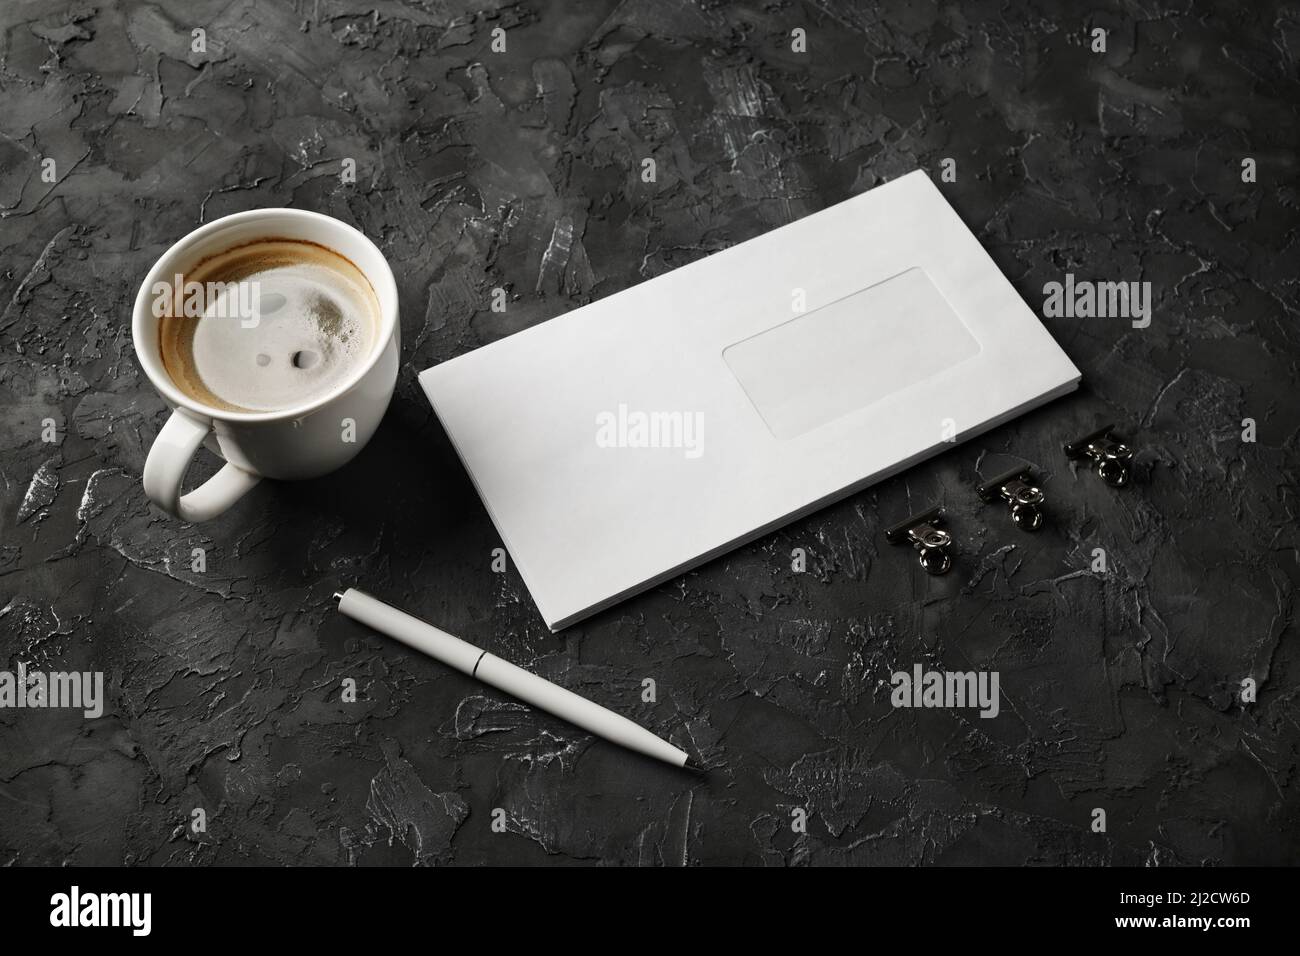 Enveloppe vierge, tasse à café, stylo et pinces sur fond de plâtre noir. Maquette de marque. Banque D'Images